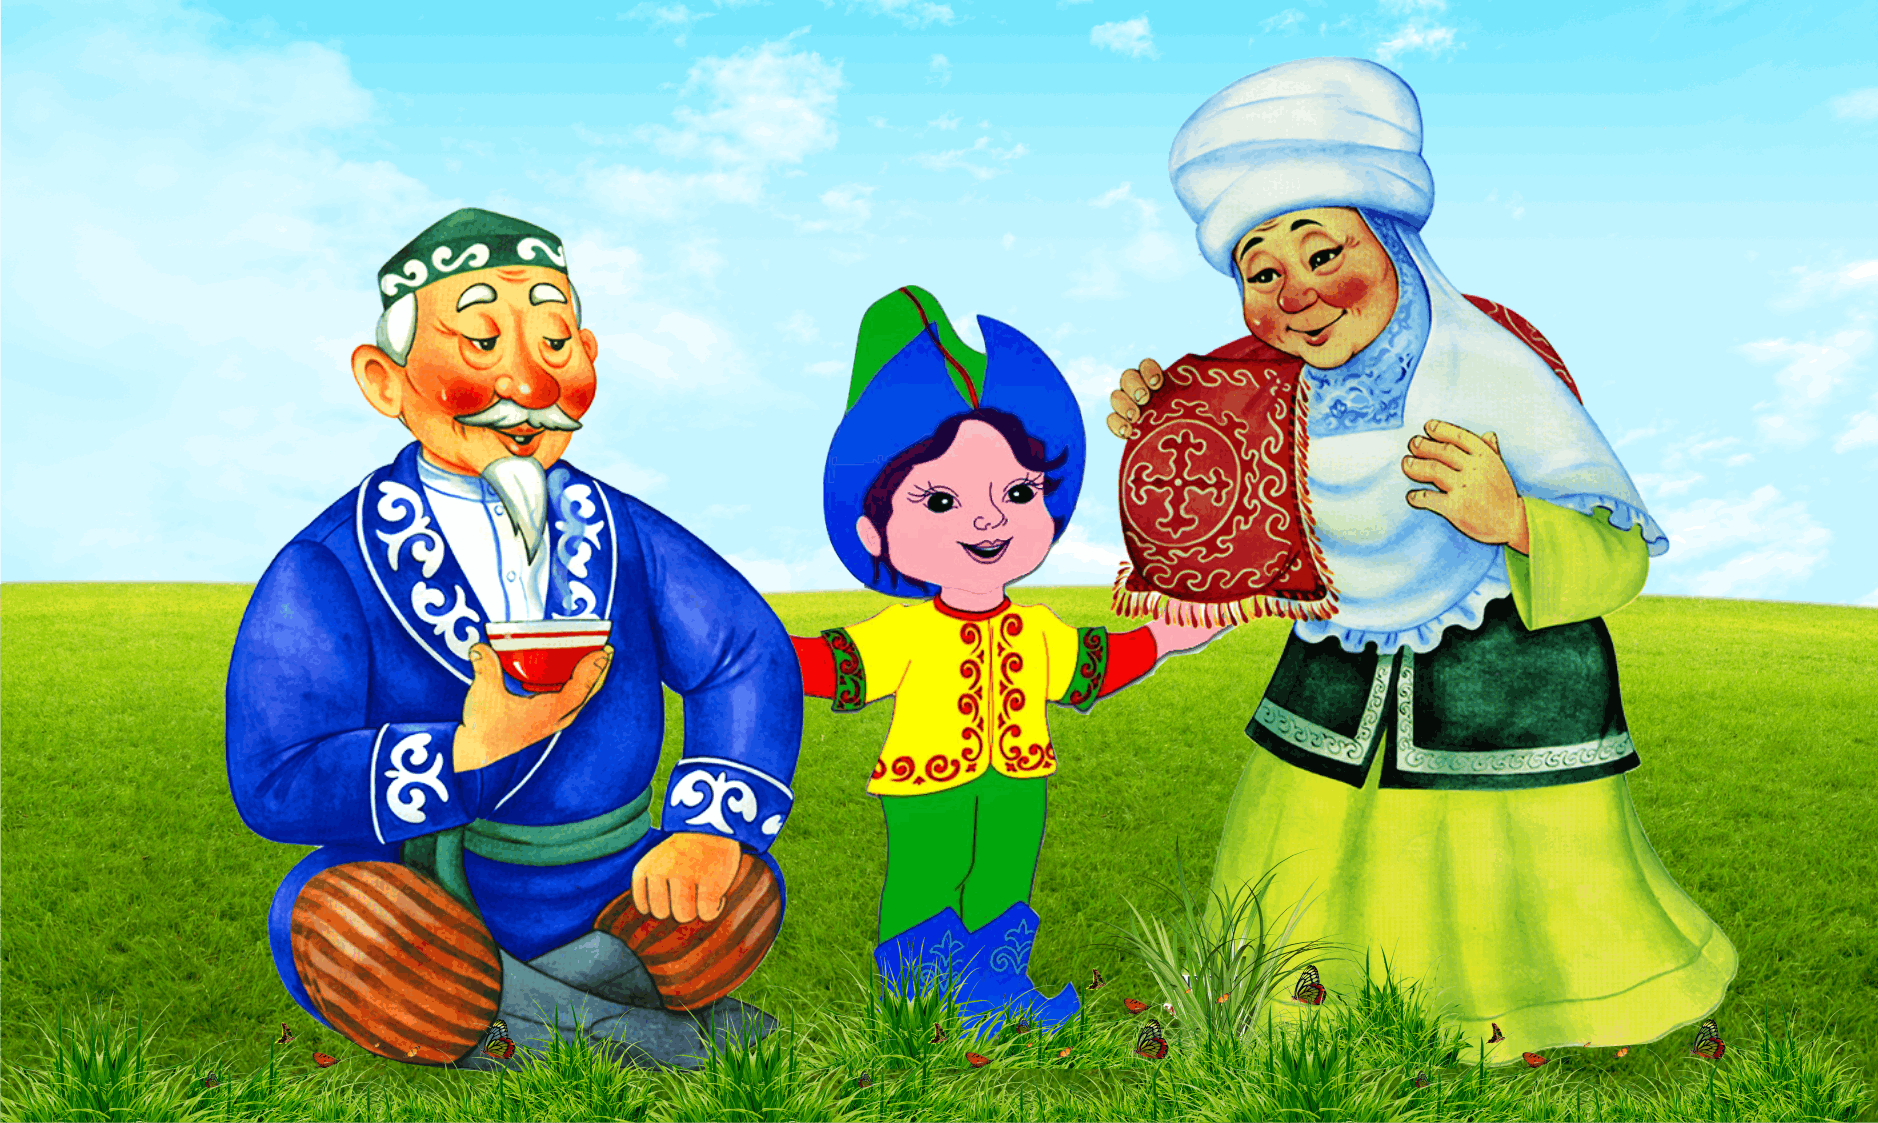 Бейиш казакша. Казахский персонаж. Казахская бабушка с ребенком. Бабушка и дедушка казахи. Казахские сказочные герои.